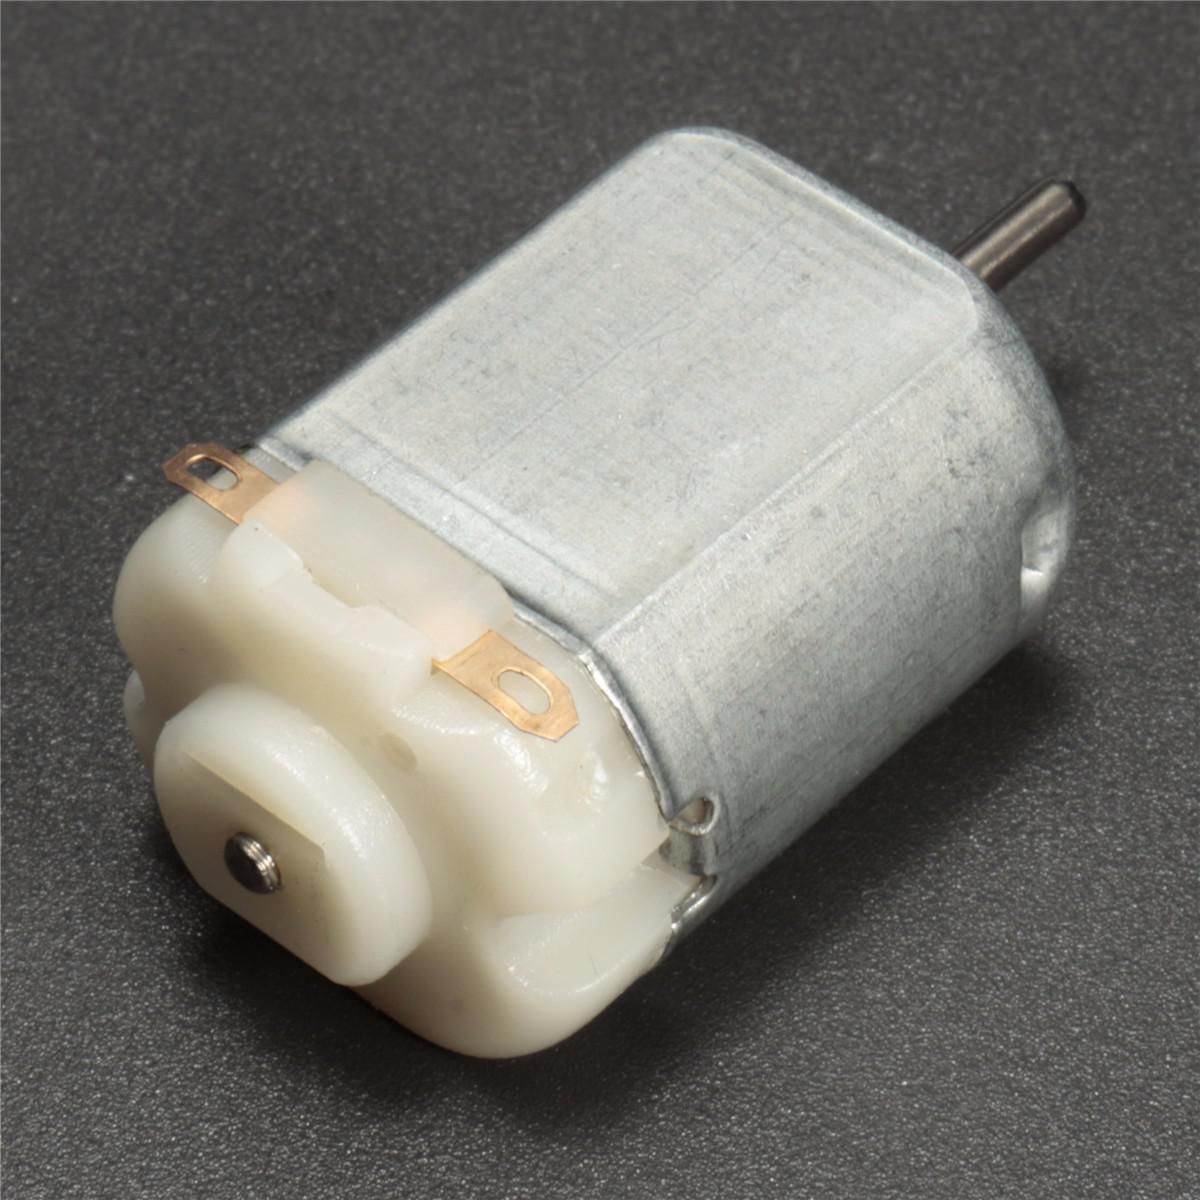 1-10 pcs Small 1.5V 4.5V DC Electric Motor Brushed for Models Crafts Robots ! 